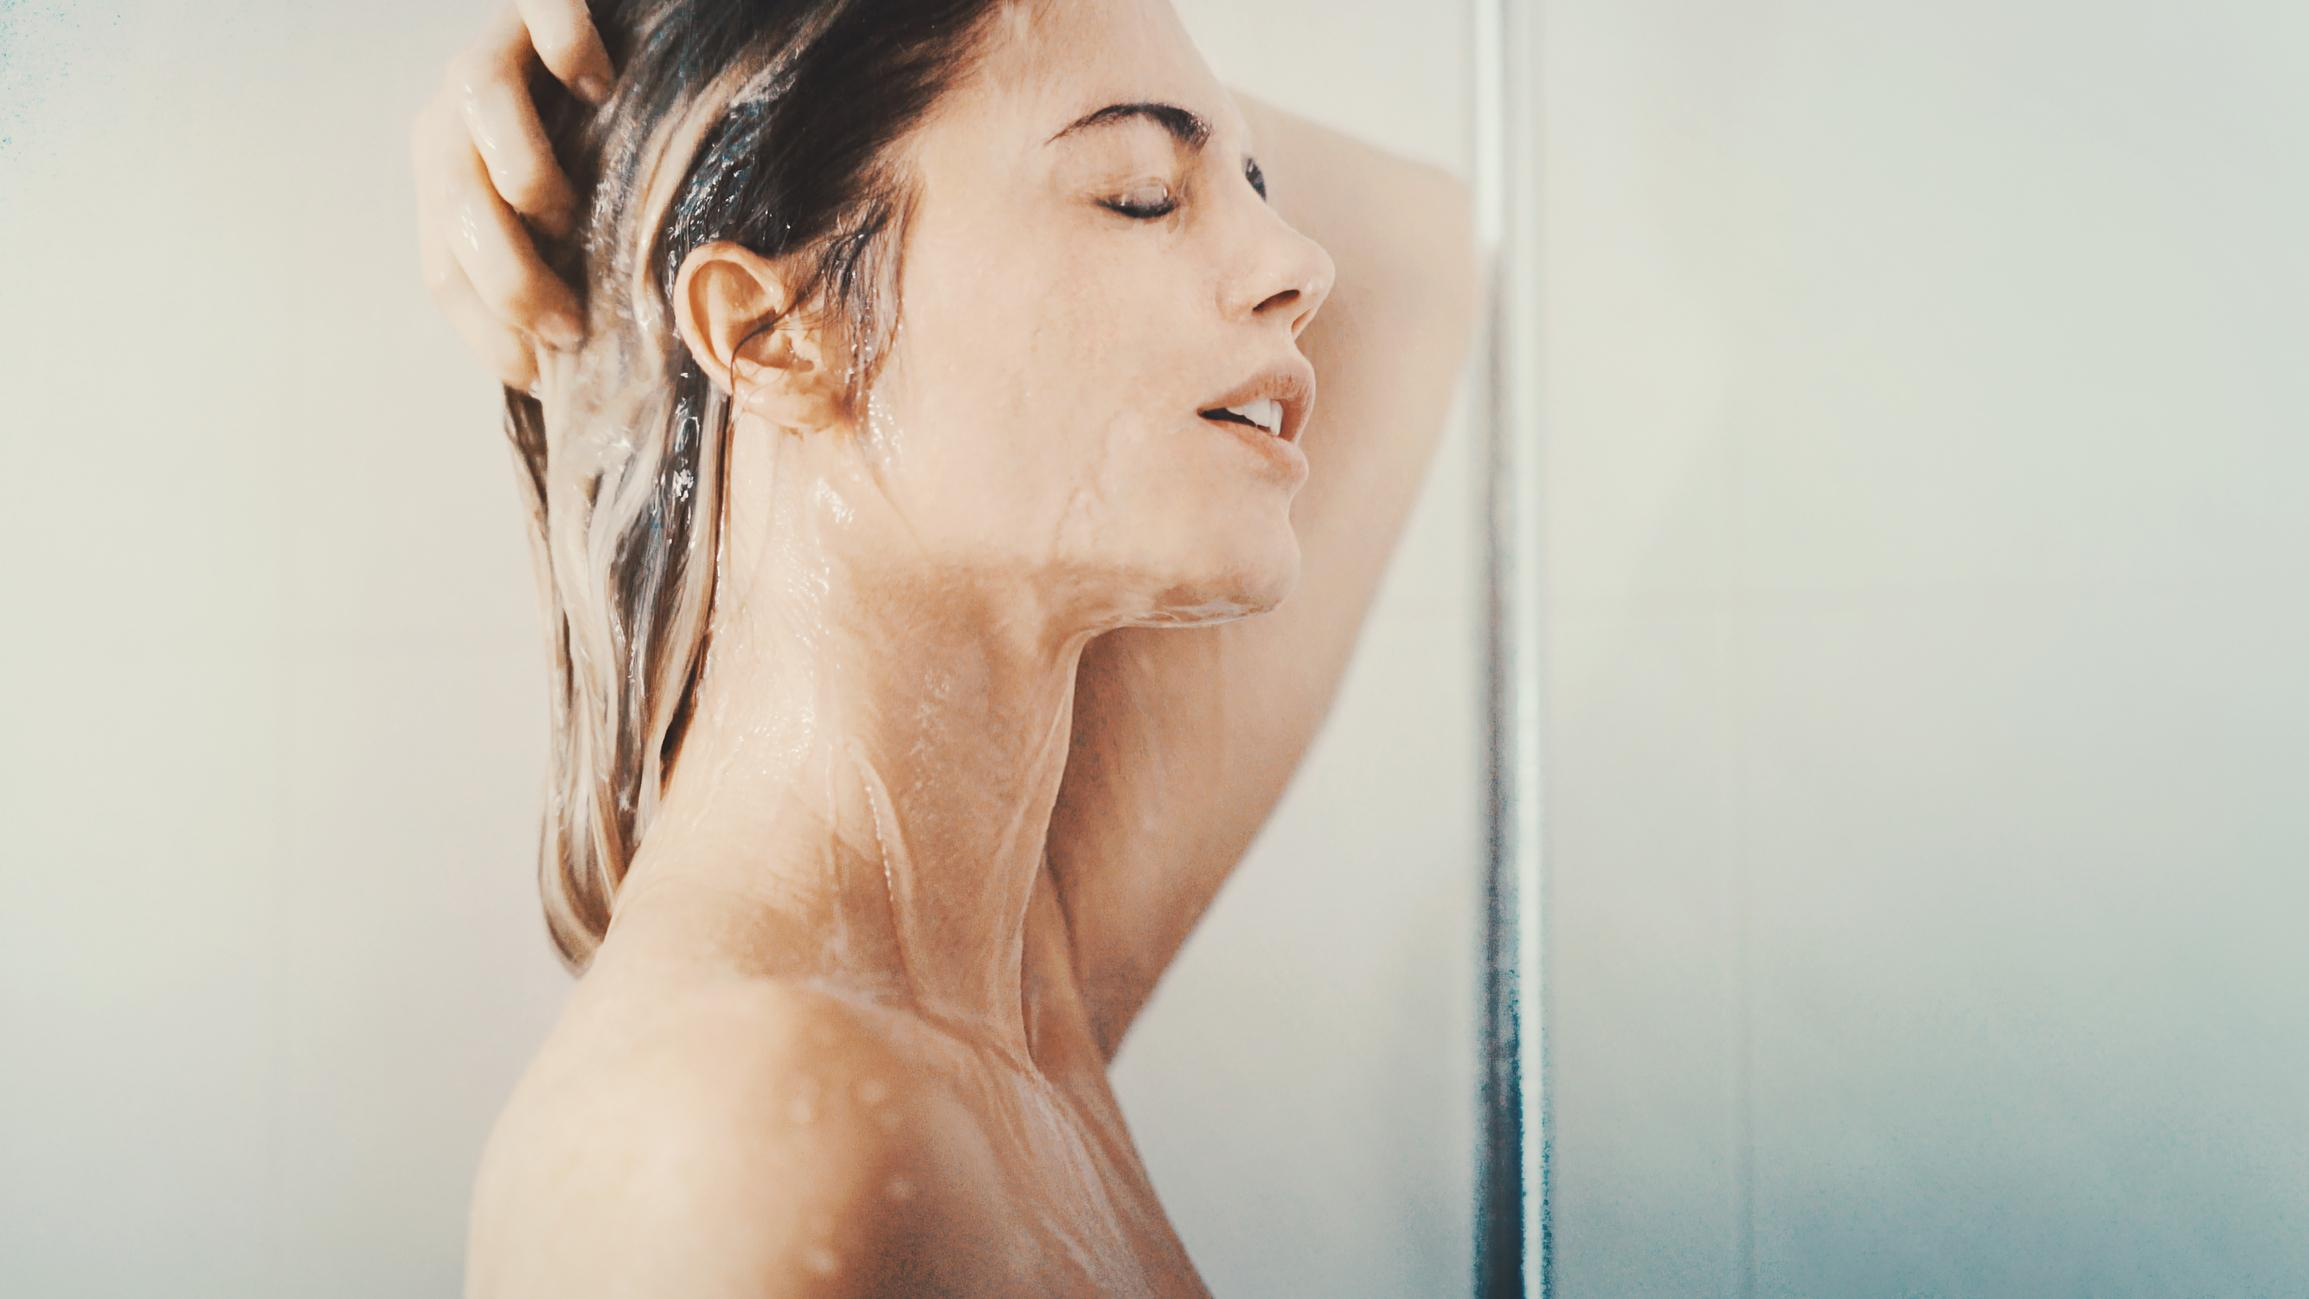 6 Conseils Pour Une Douche Parfaite! - Femmes D'aujourd'hui intérieur Necessaire Pour Se Doucher